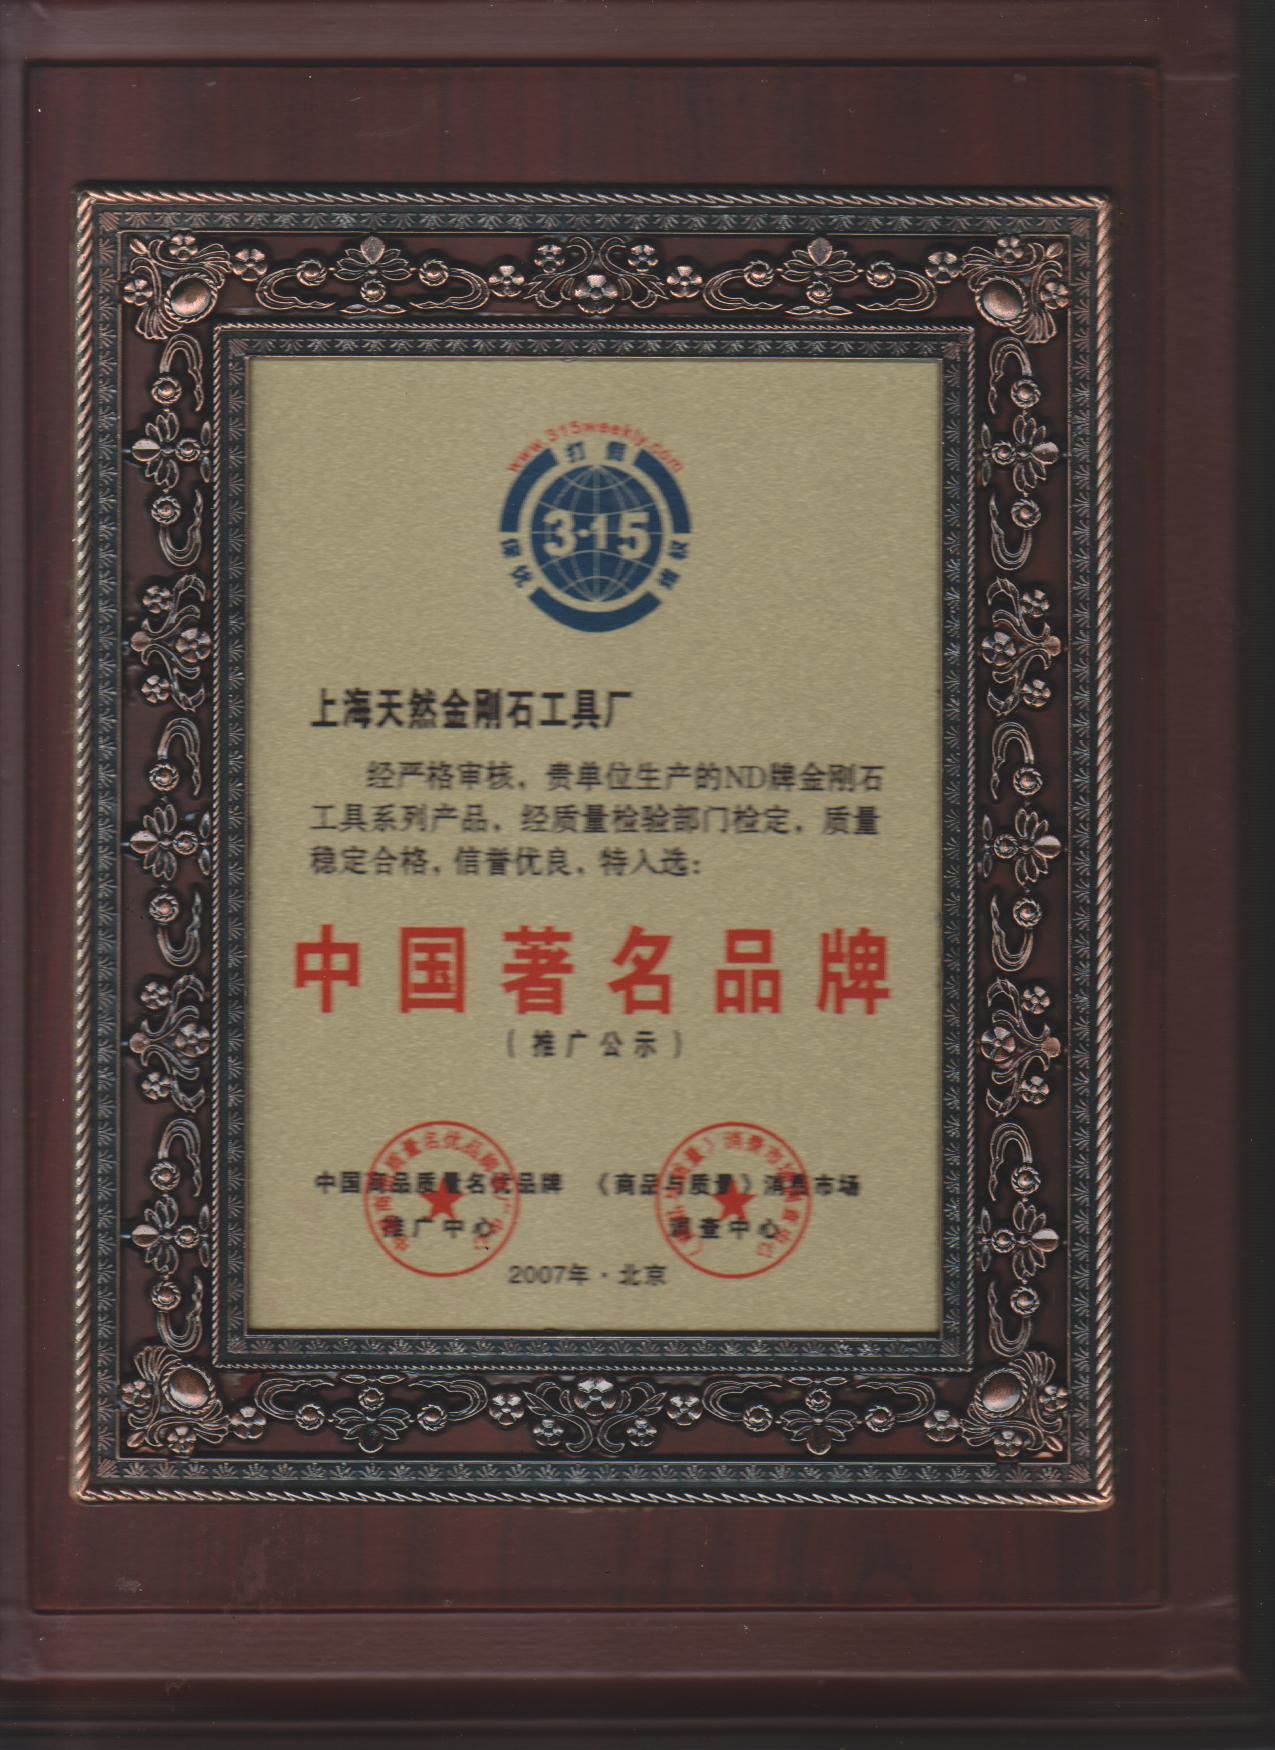 上海天然金刚石工具厂成为中国著名品牌